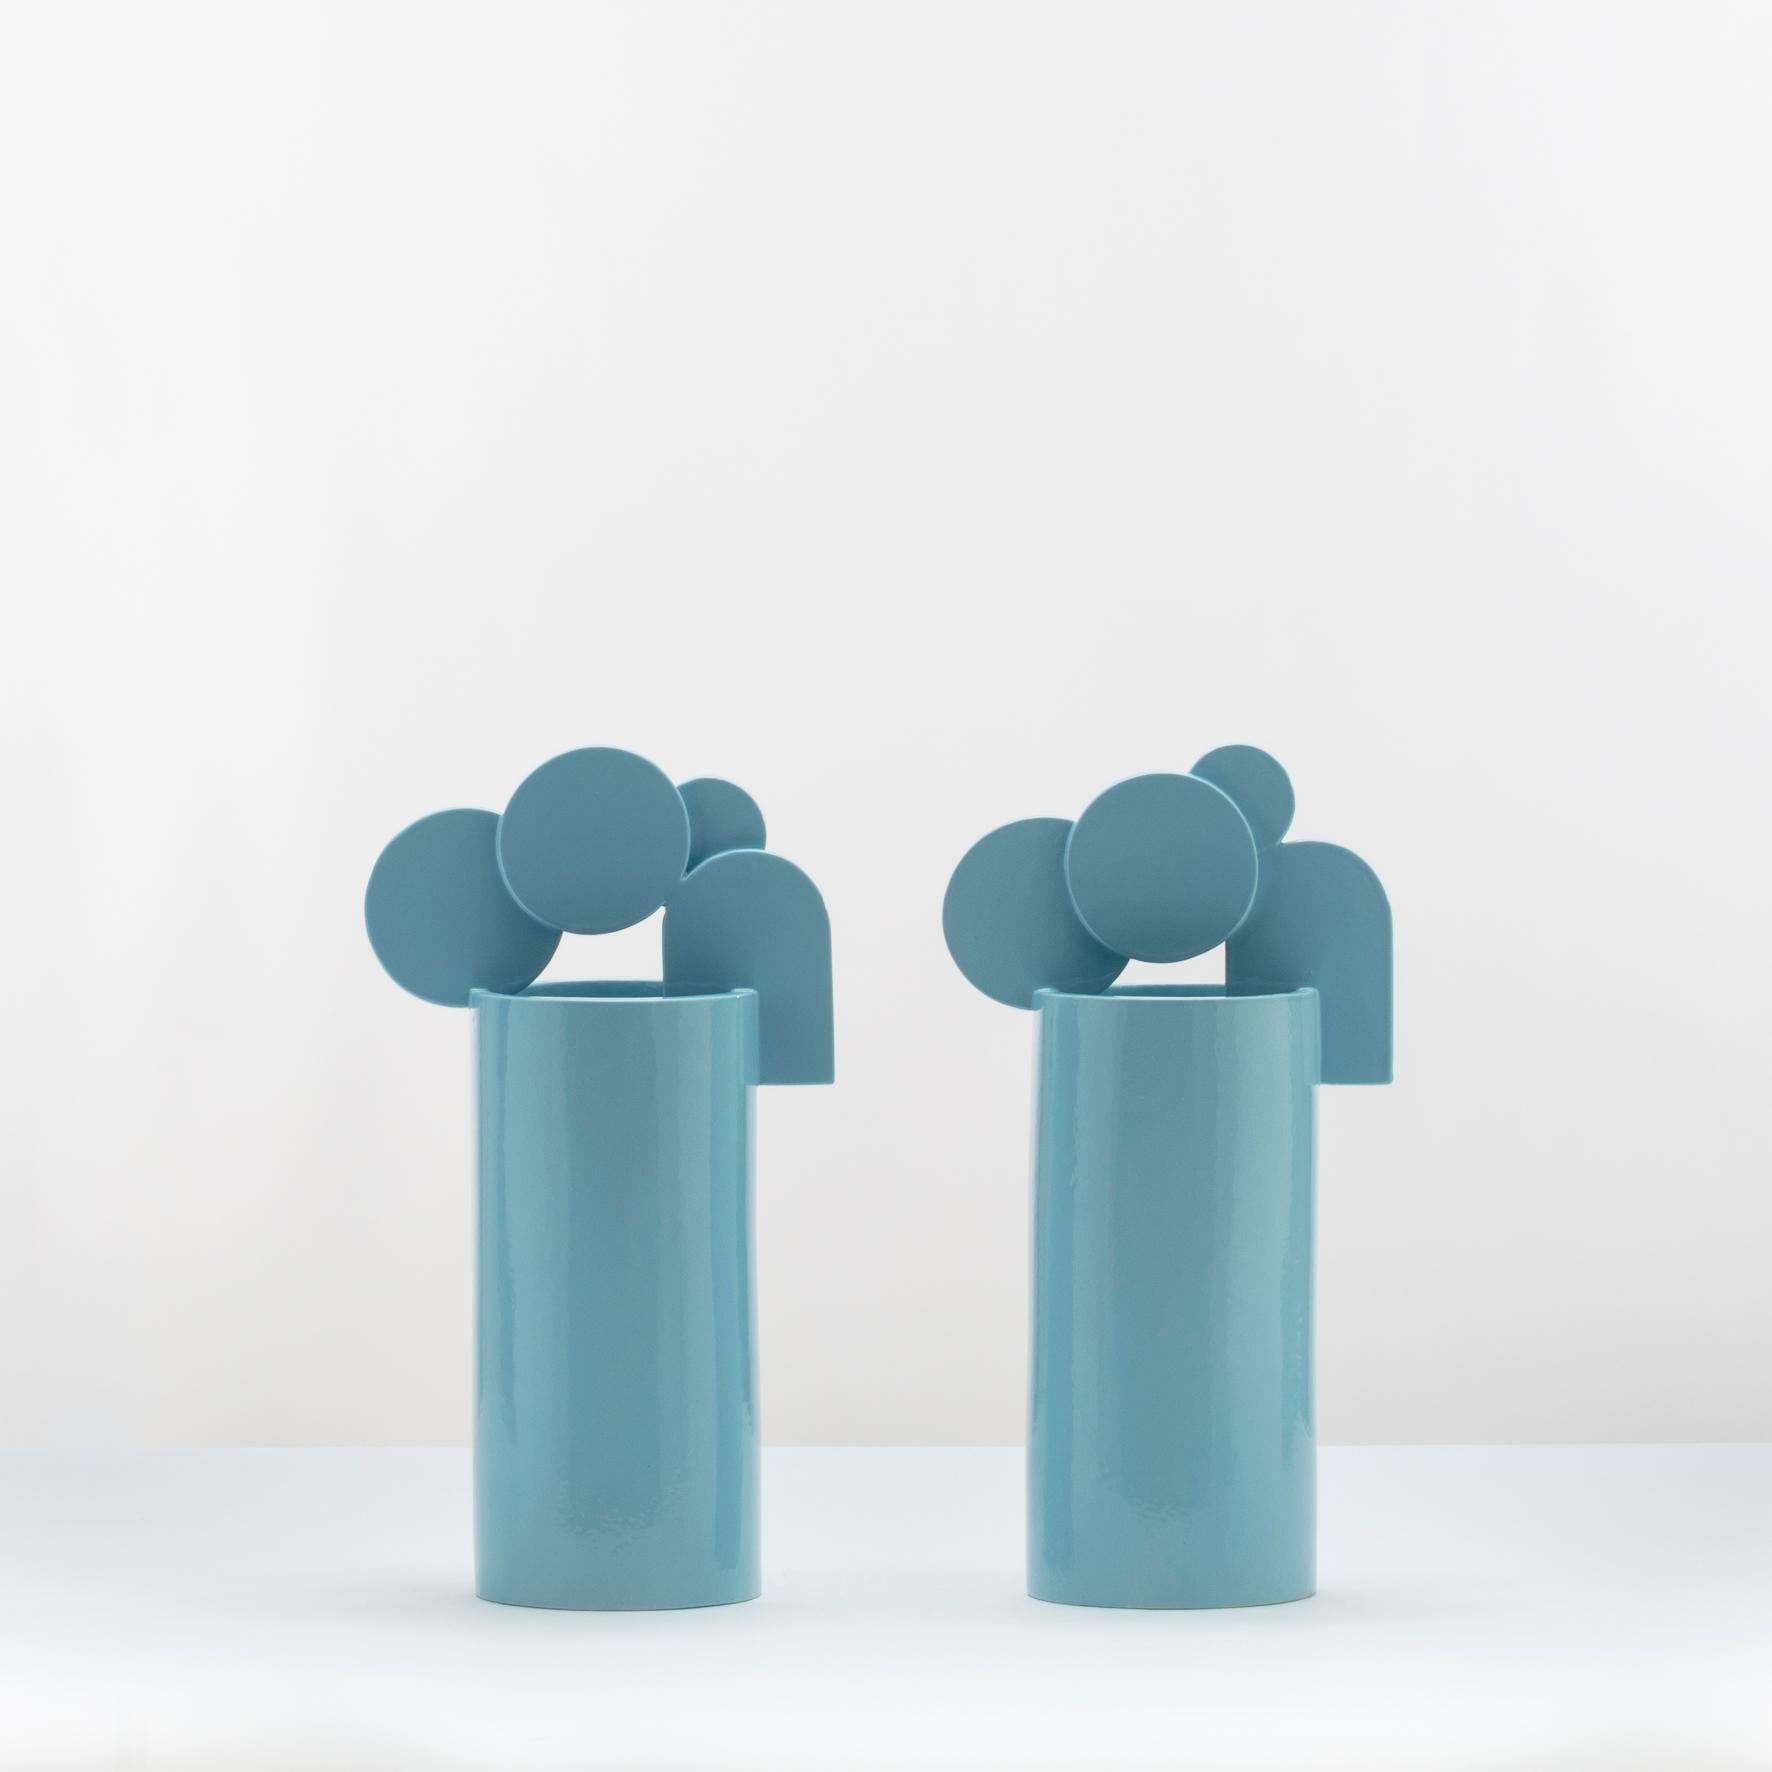 Bauhaus Ceramic vase -Cielo di Roma- by Cuorecarpenito Bright Blue Glossy  For Sale